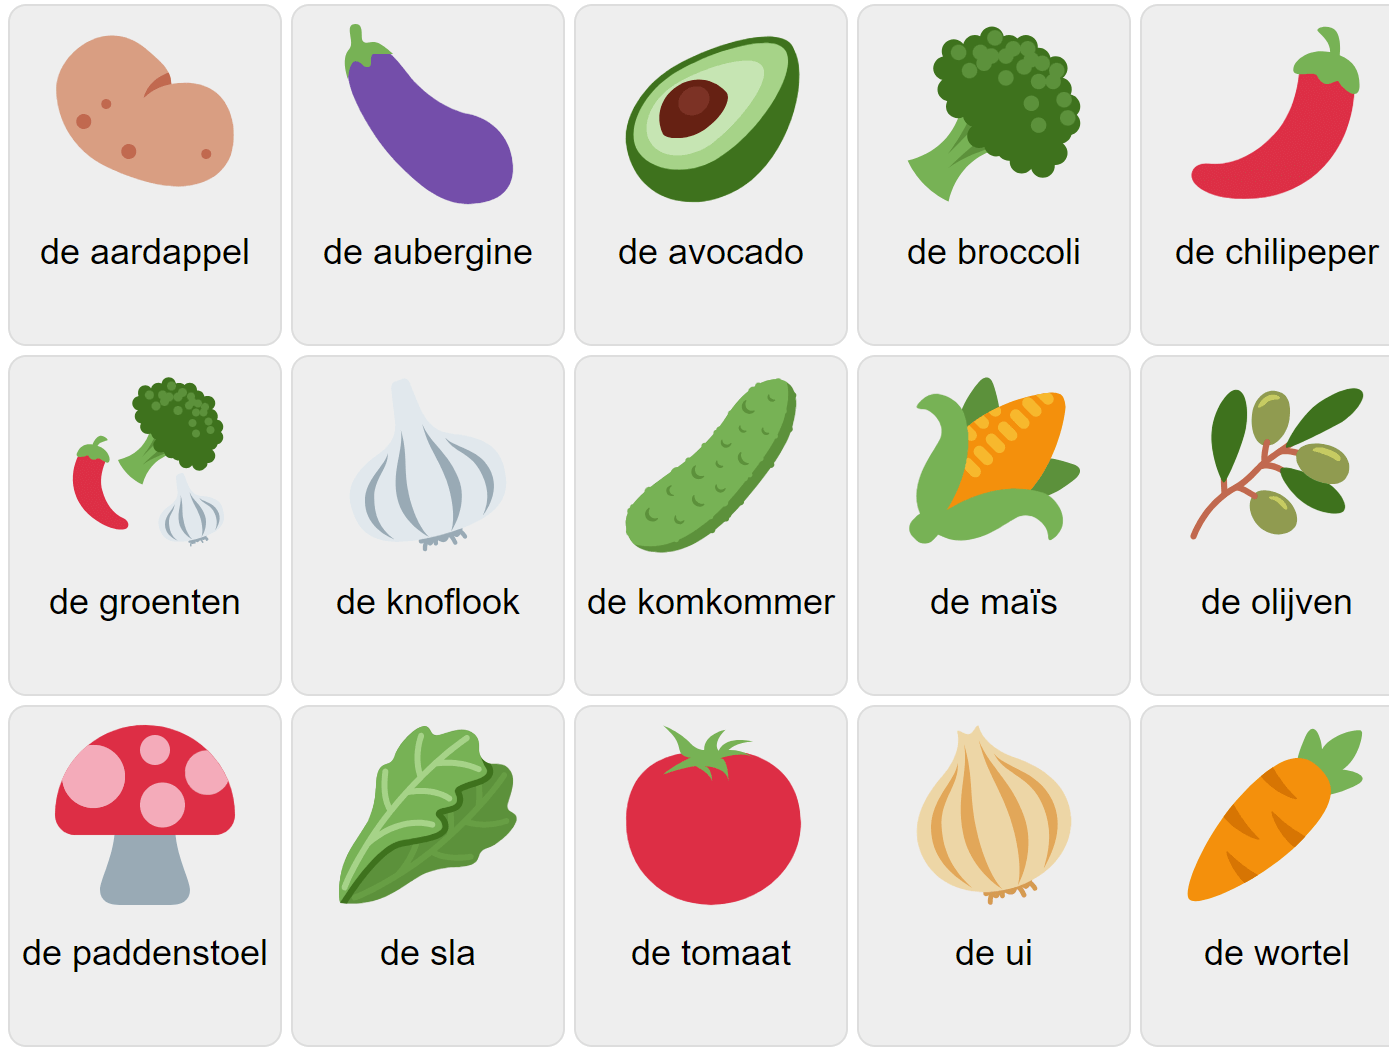 Grönsaker på nederländska